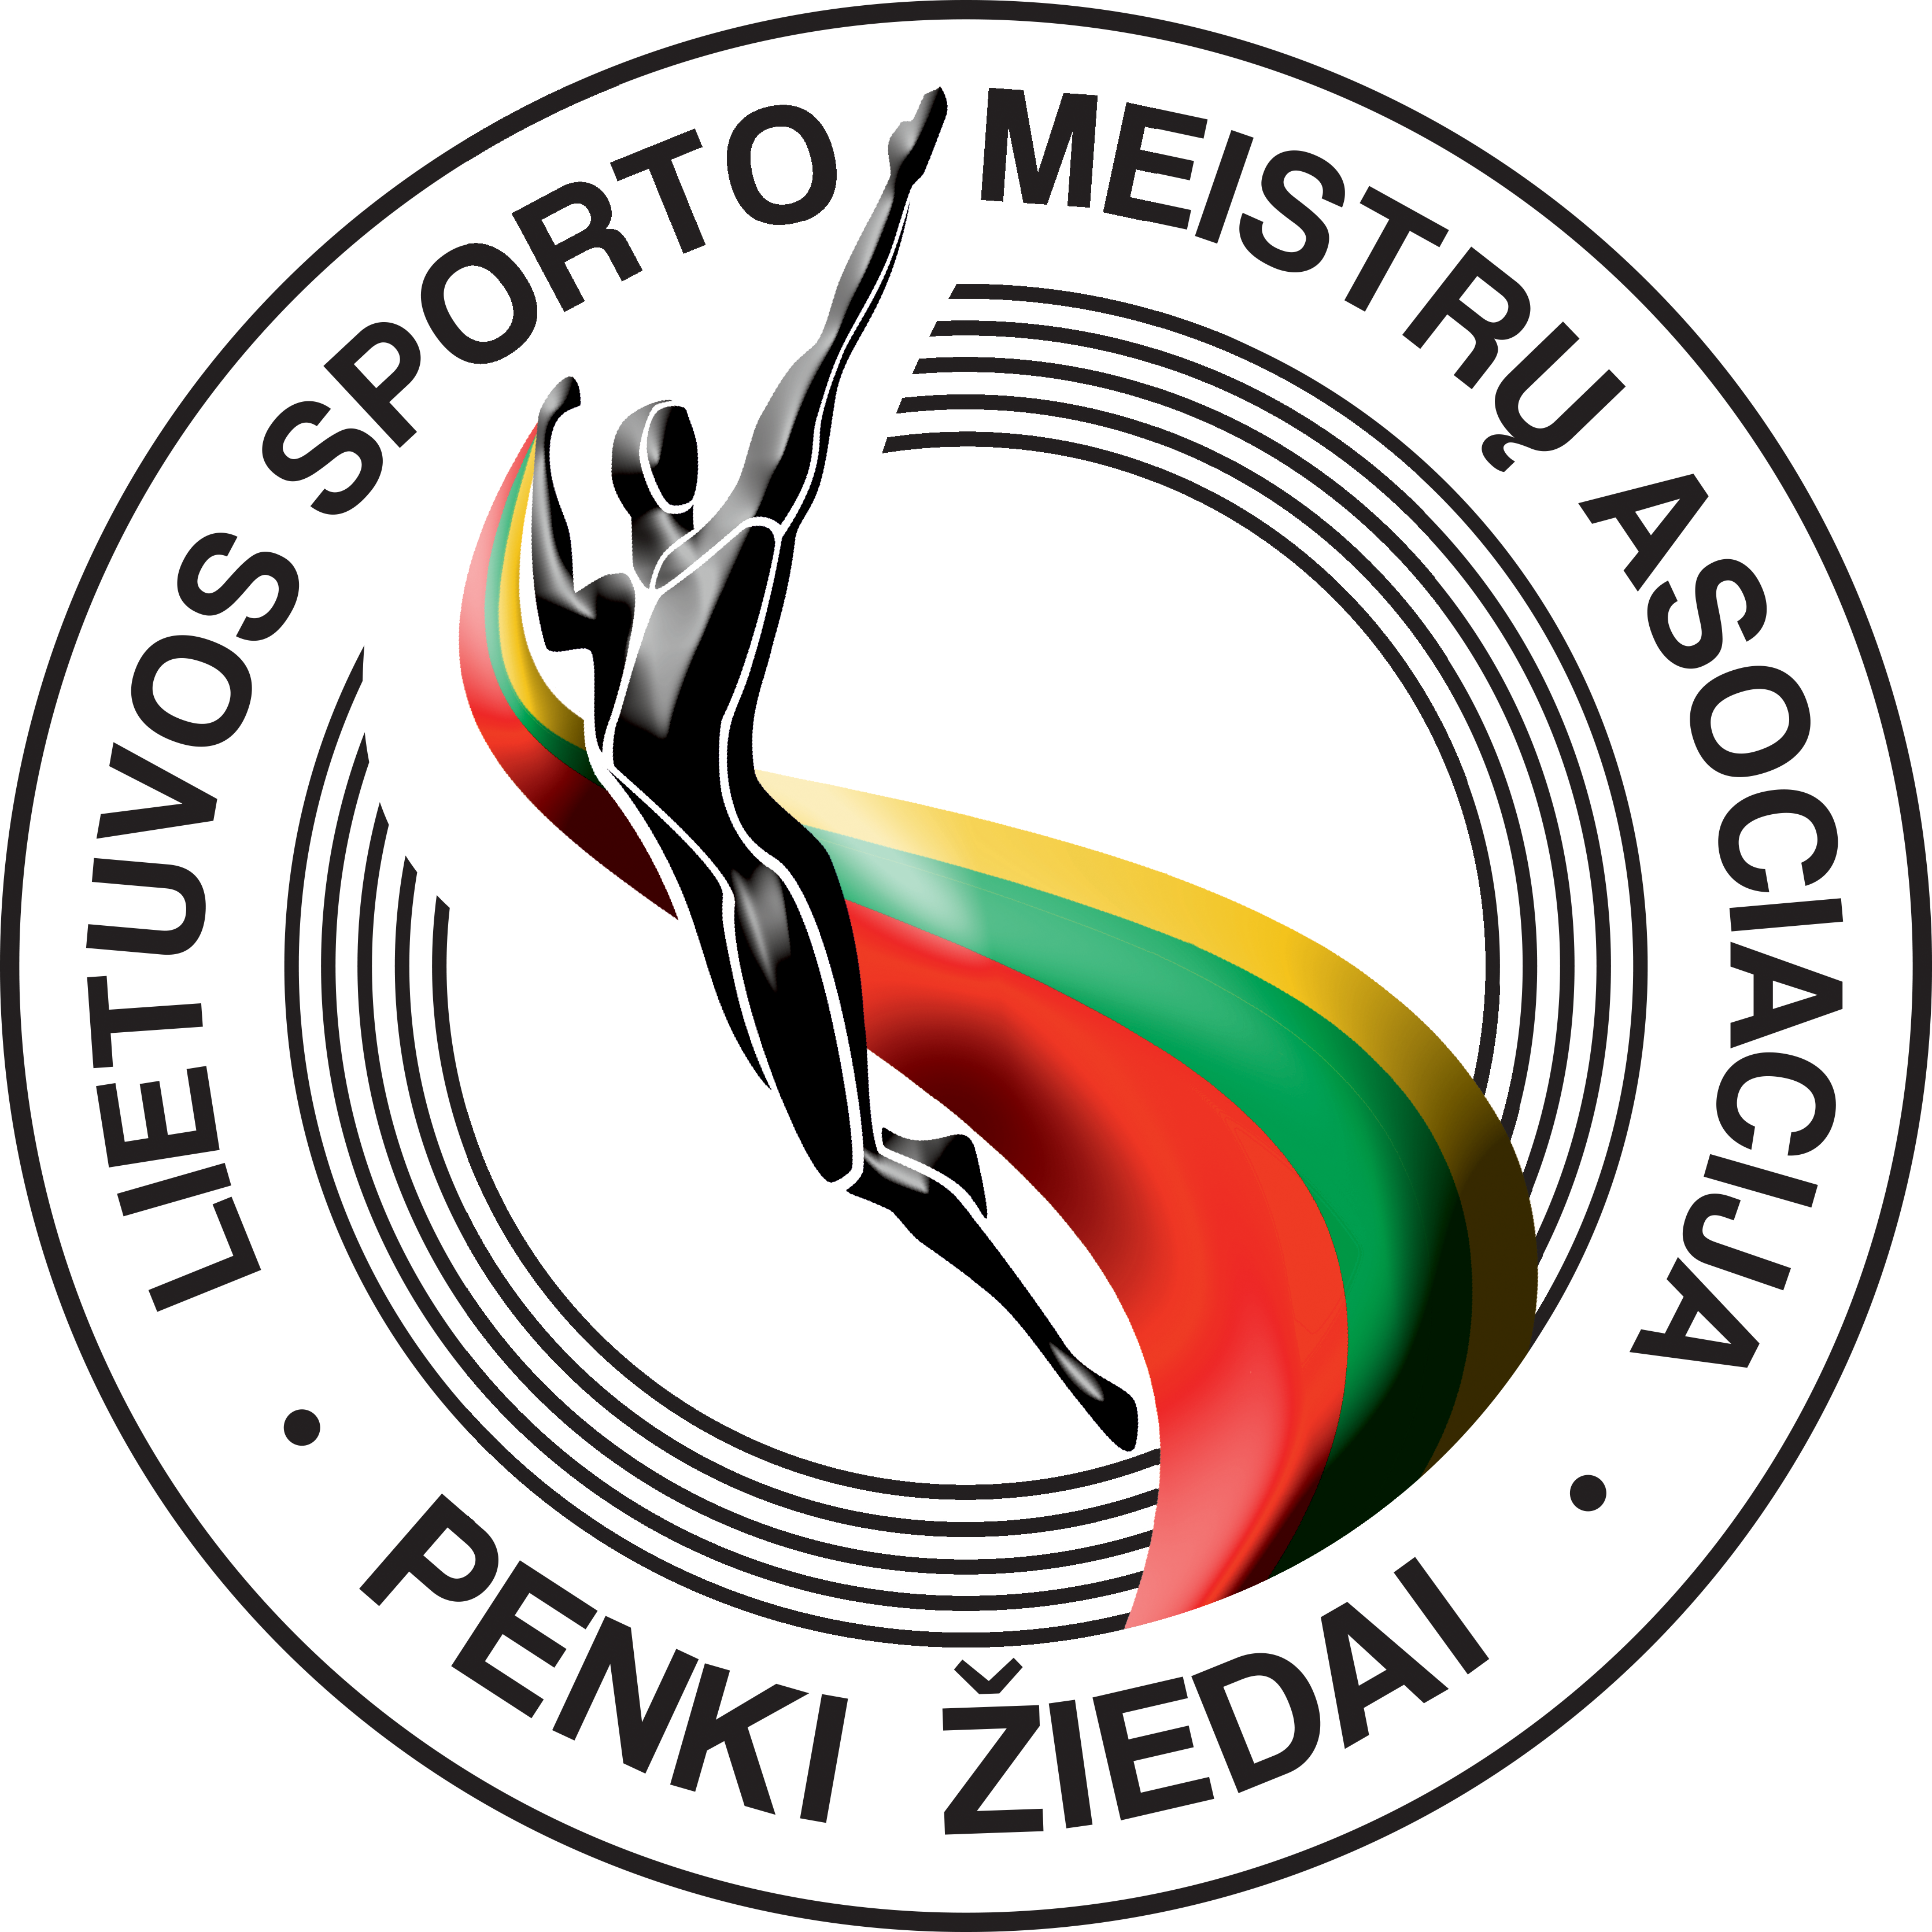 Lietuvos sporto meistrų asociacija